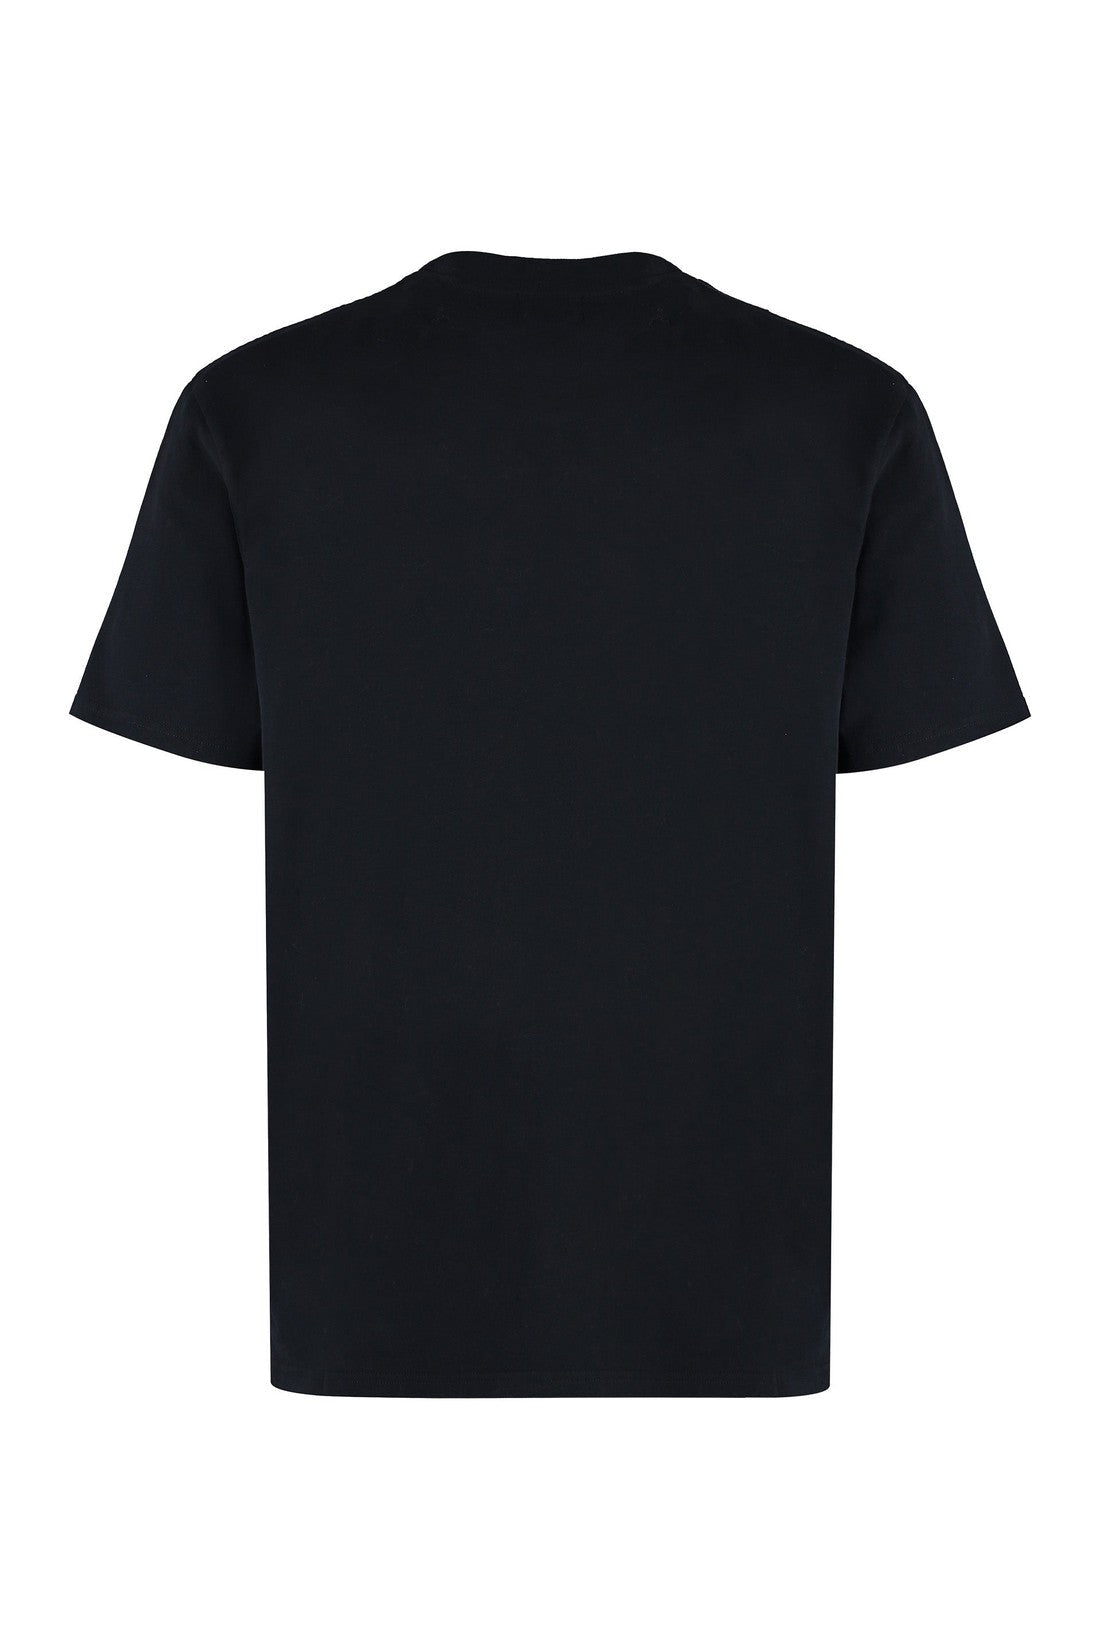 Marant-OUTLET-SALE-Honore Cotton crew-neck T-shirt-ARCHIVIST